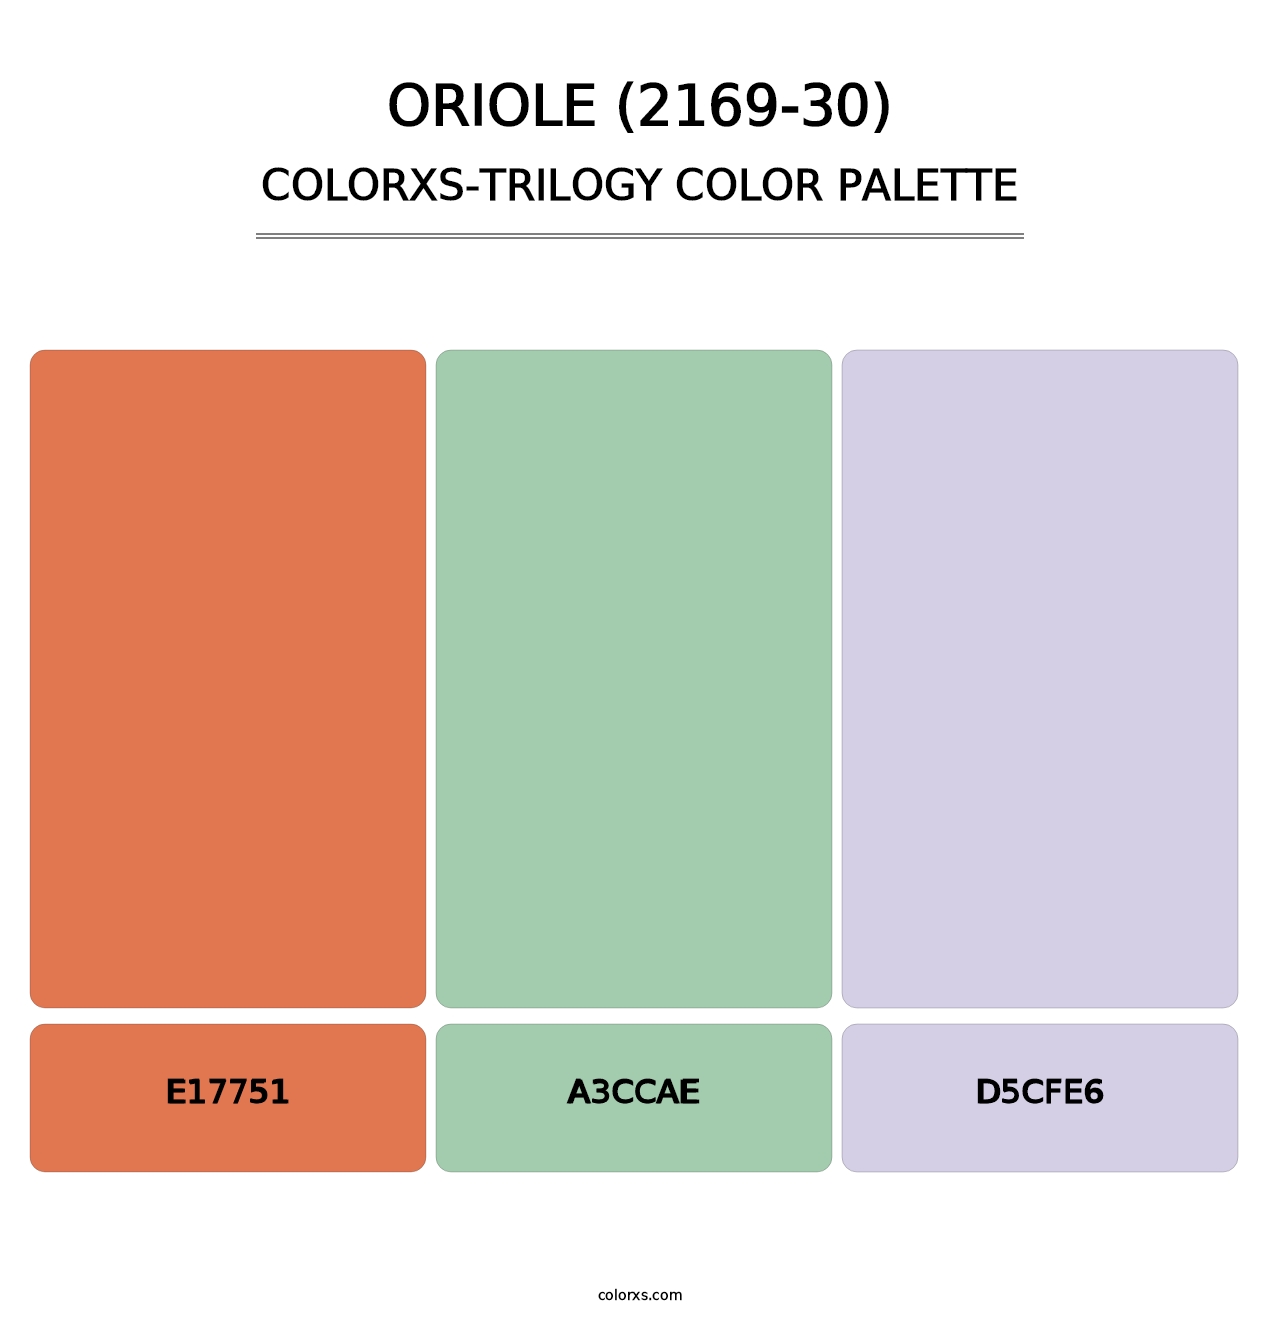 Oriole (2169-30) - Colorxs Trilogy Palette